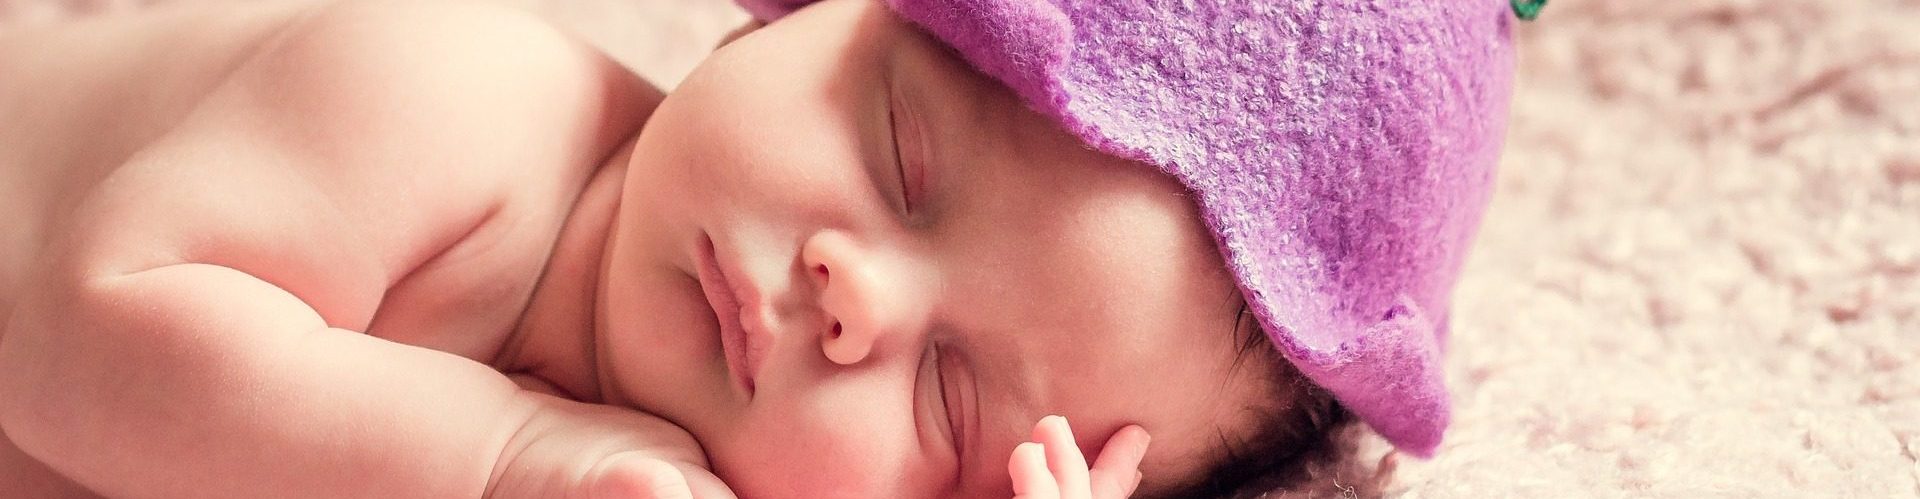 Entspannter Säugling – glückliches Baby?